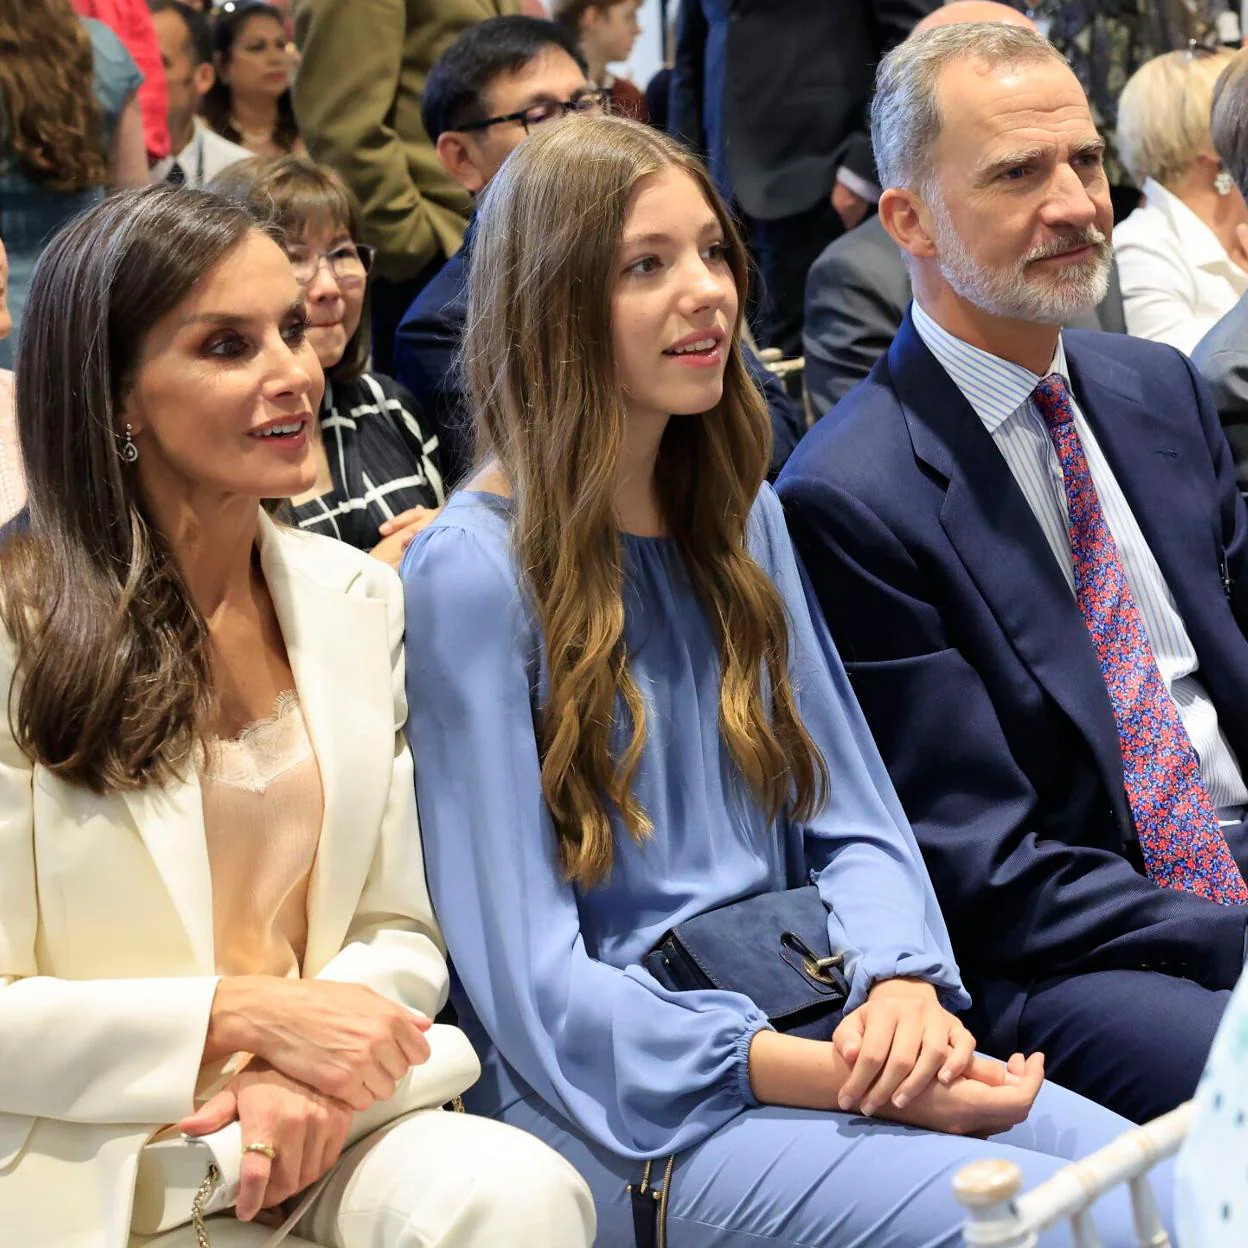 La infanta Sofía junto a la princesa Leonor y sus padres, Don Felipe y Doña Letizia, en la graduación de la Princesa de Asturias./ Casa Real/Limited Pictures